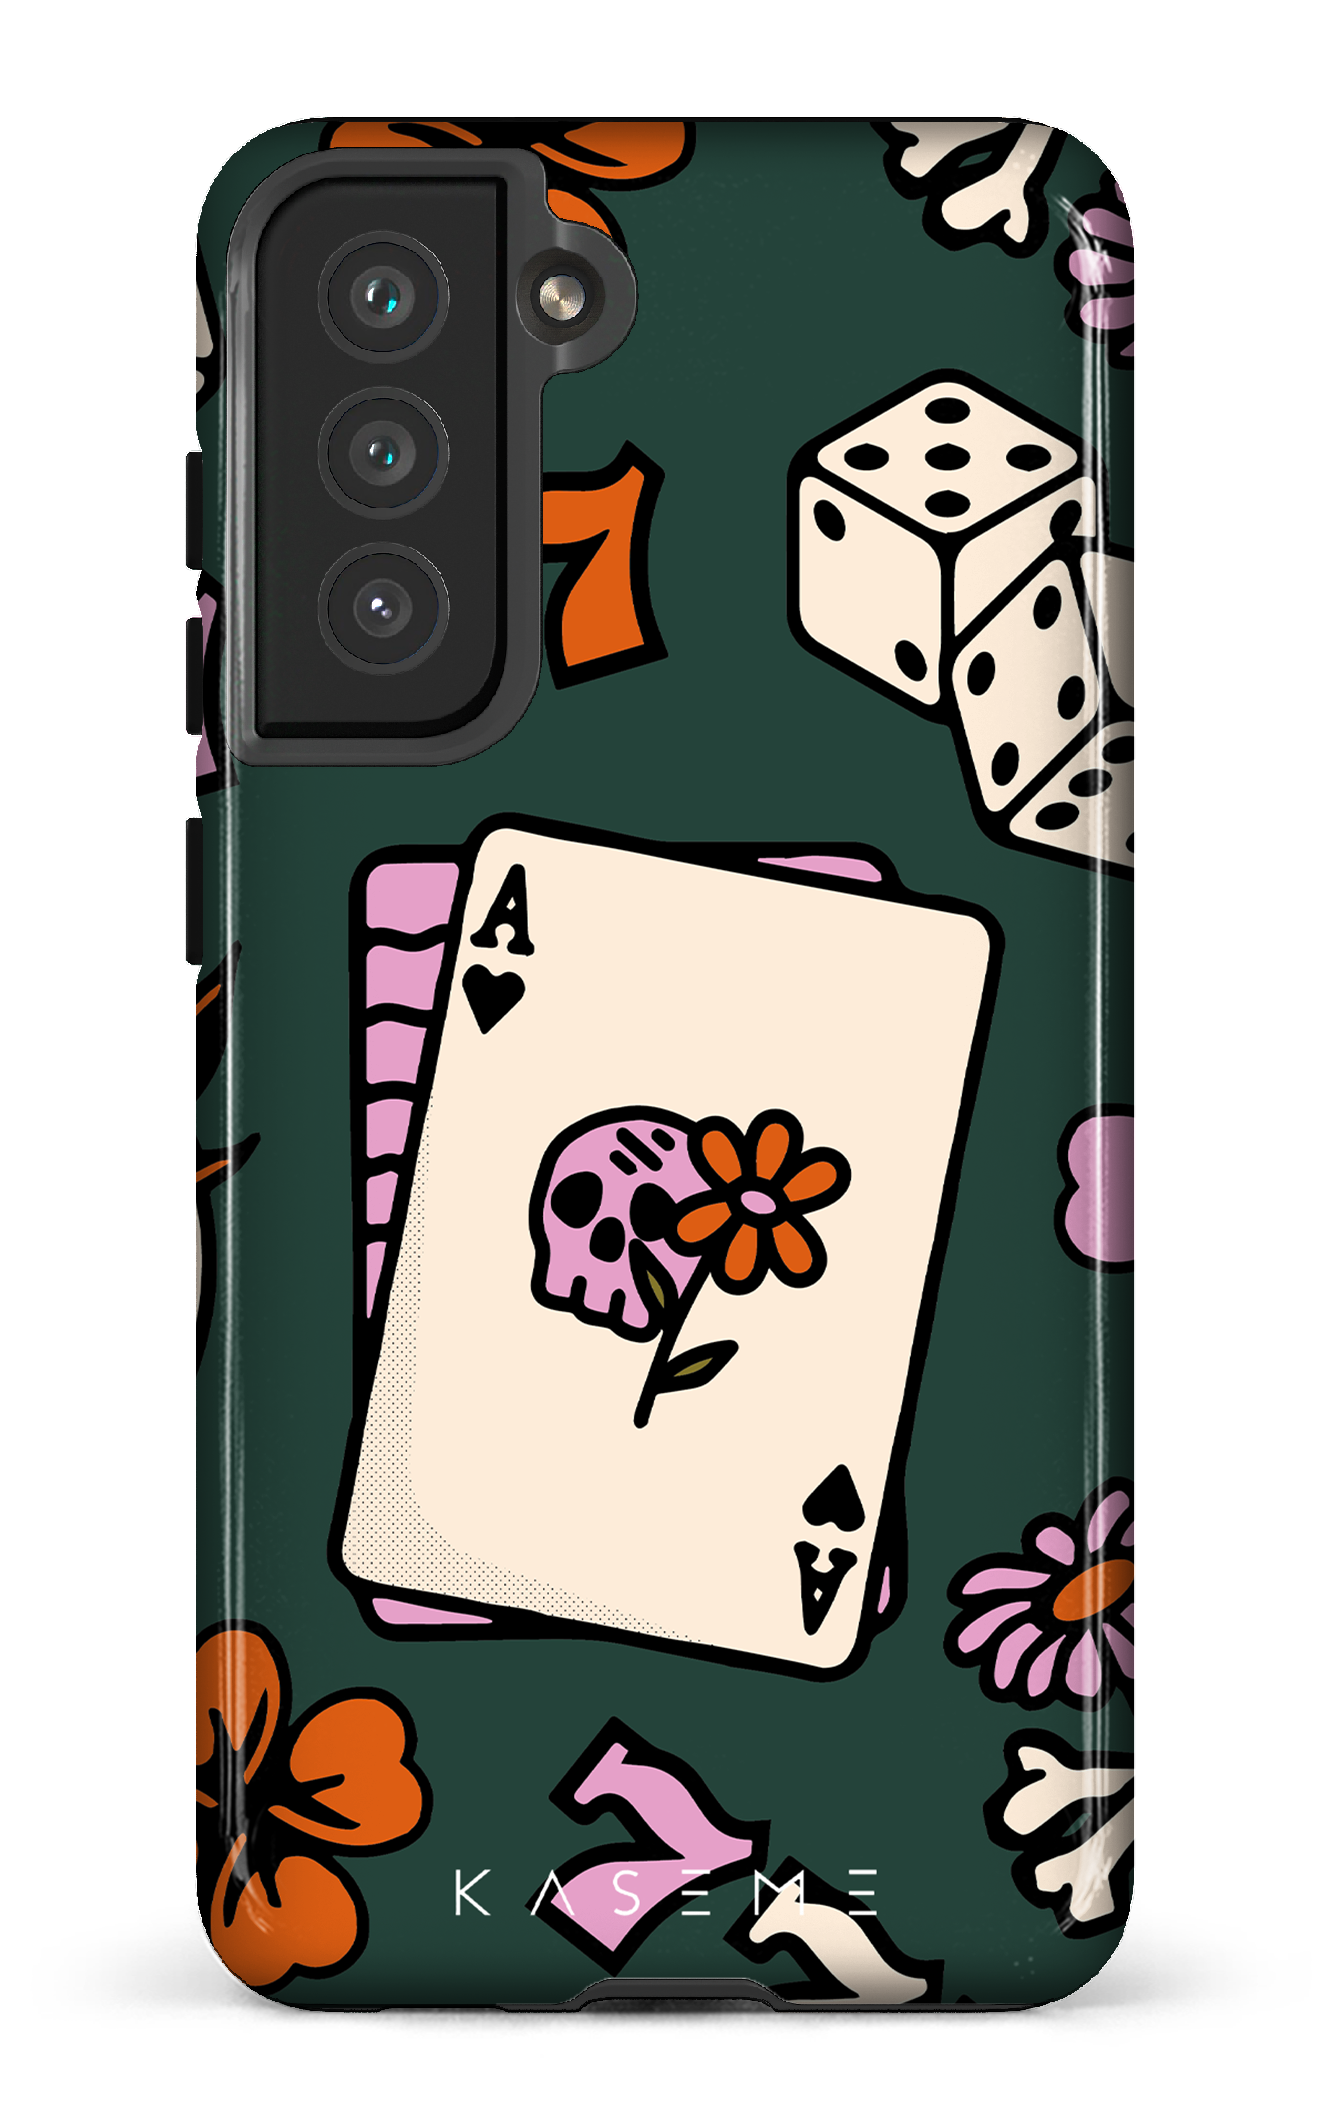 Poker Face - Galaxy S21 FE